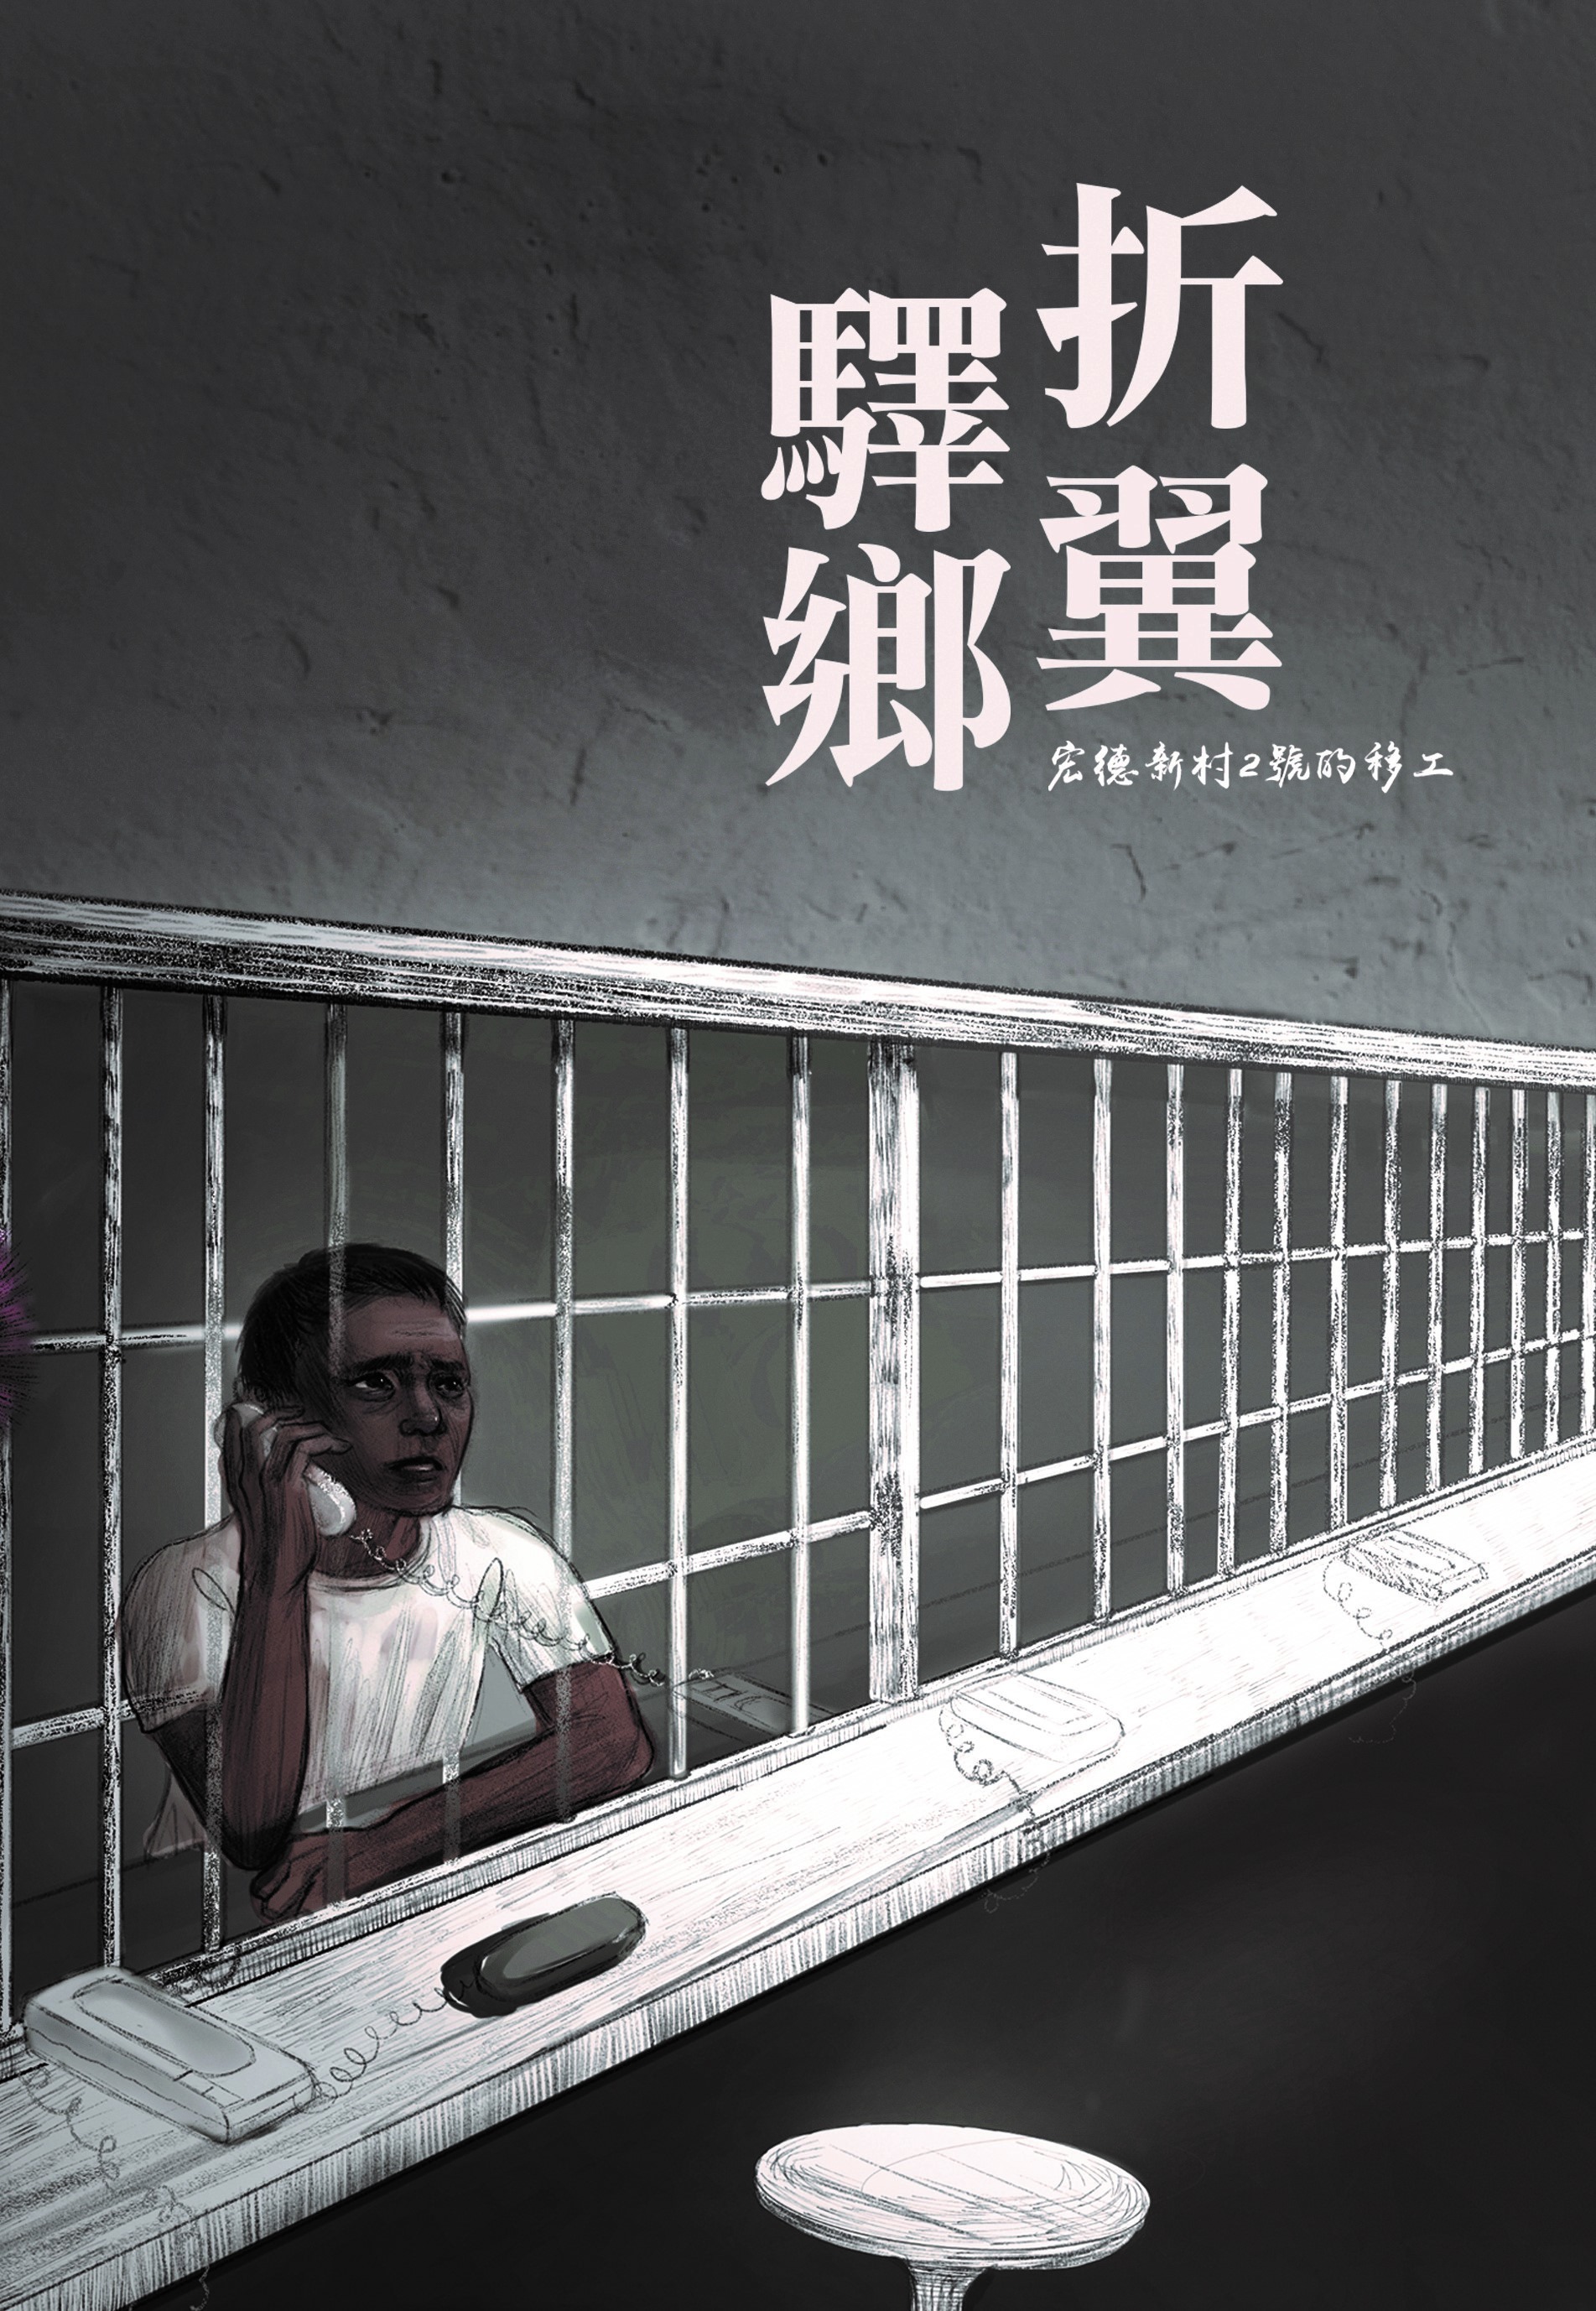 即將出版的新書《折翼驛鄉——宏德新村二號的移工》，訪視受刑人的故事與觀察，透過文字去揭露故事背後，整個制度與社會結構性的問題，提醒整個社會讓主流大眾擴張對移工的思考。